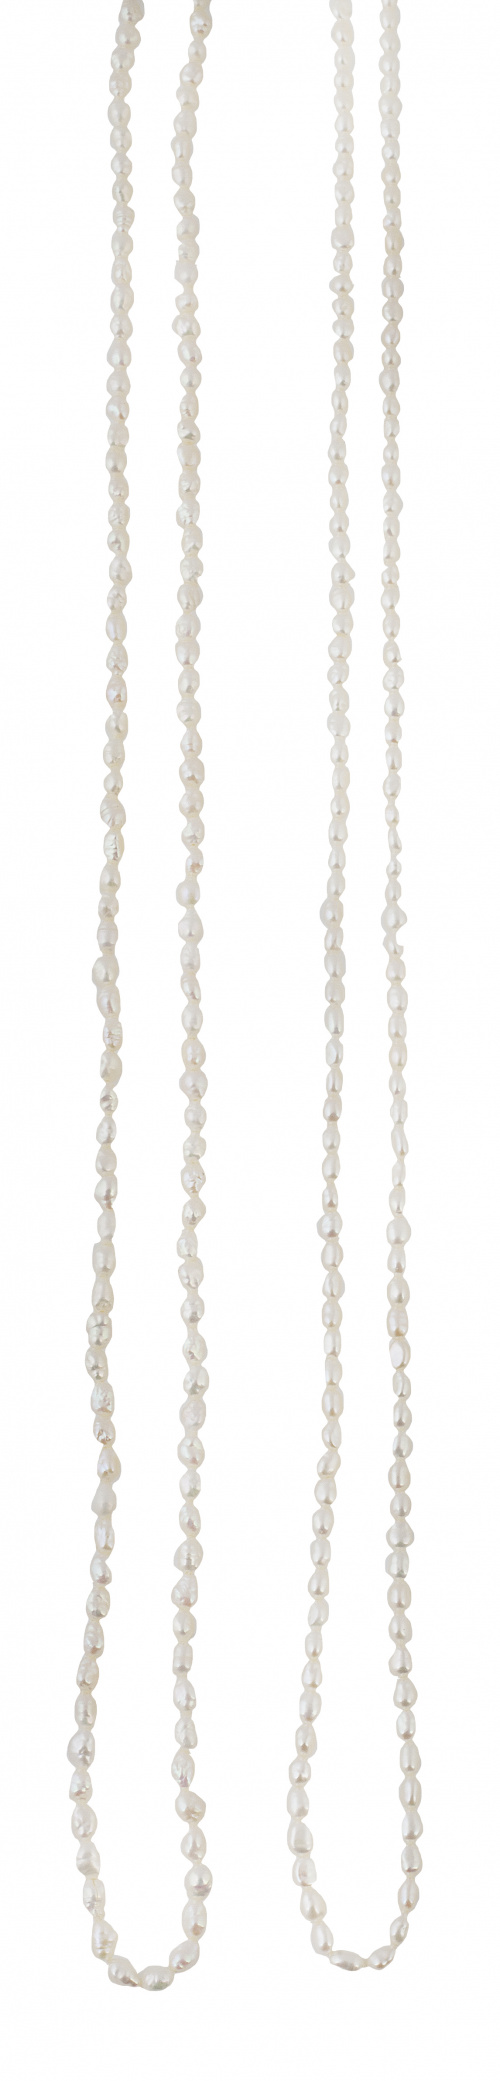 Dos collares largos de perlas en forma de grano de arroz